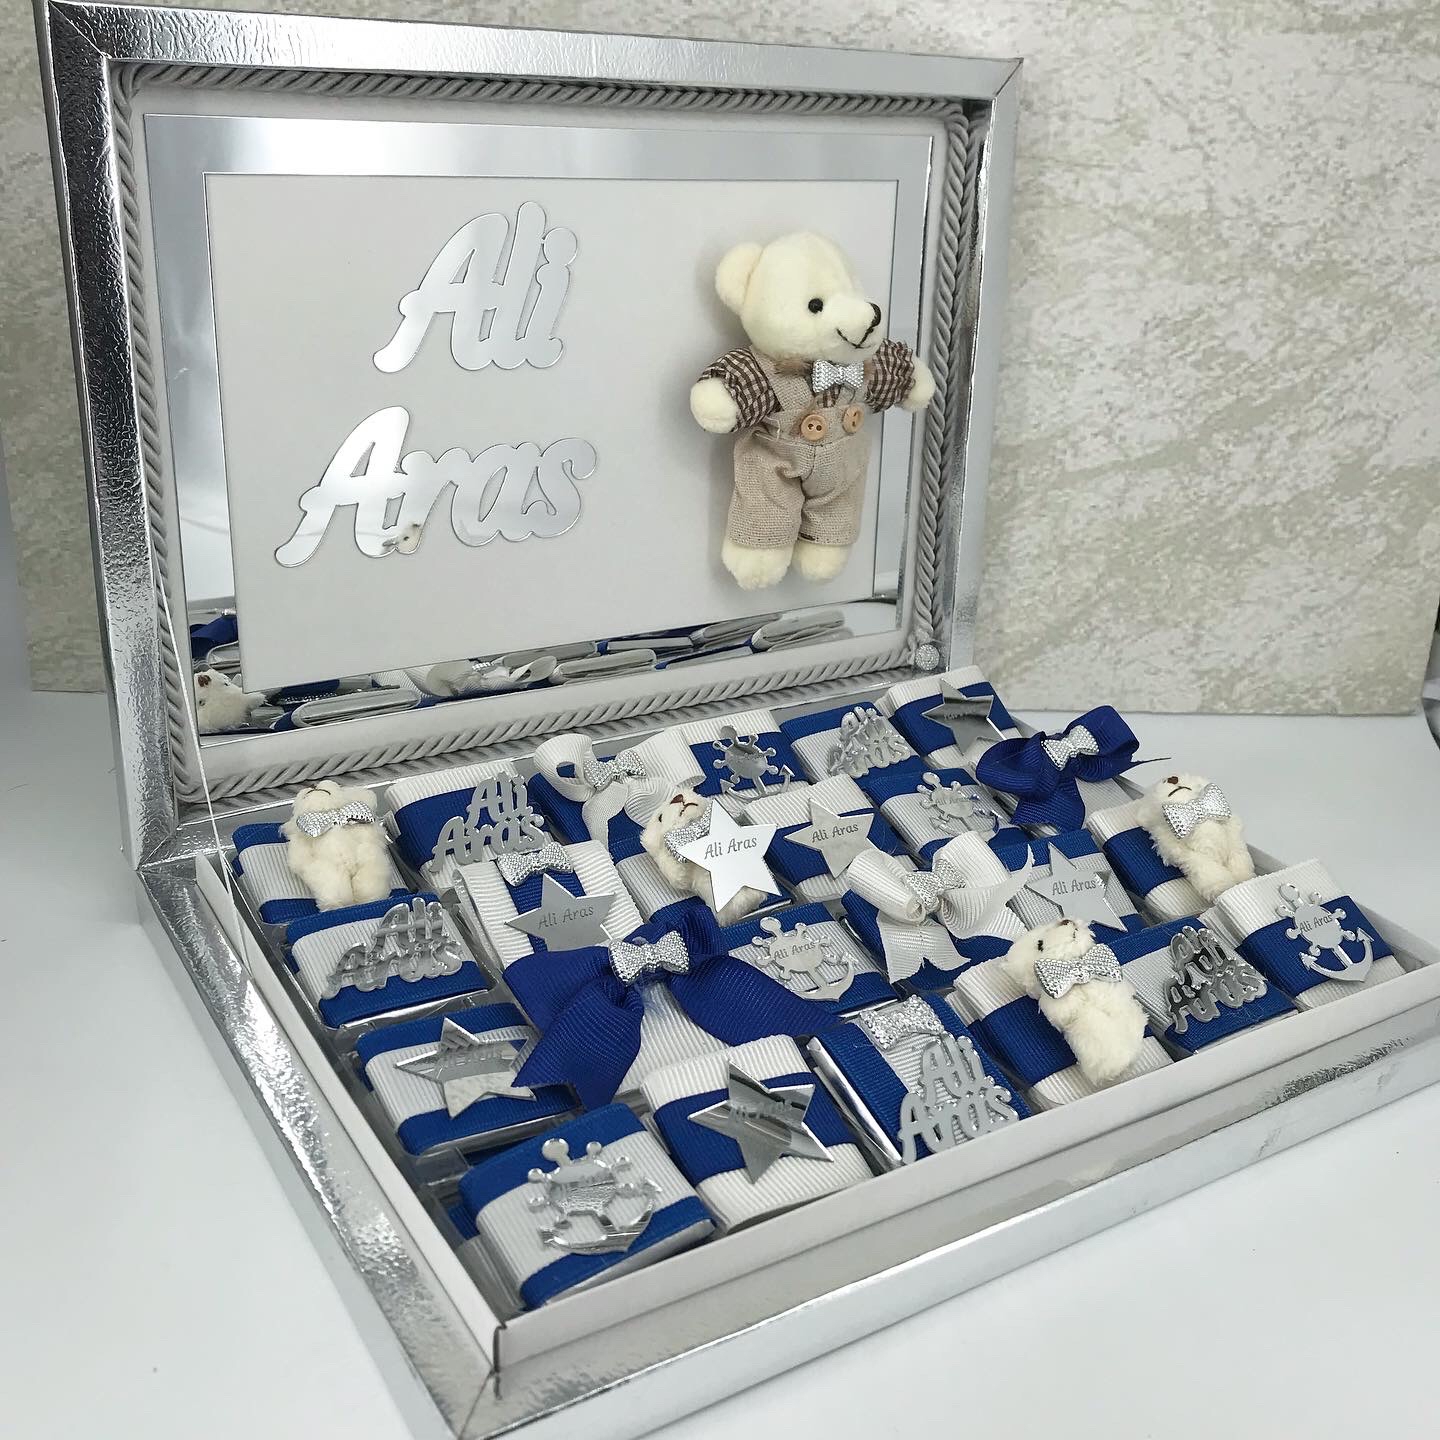 erkek bebek cikolatasi - suslu ayicikli karton kutudanbsp nbsp48 ad cikolatali - saks mavisi - beyaz kurdale 